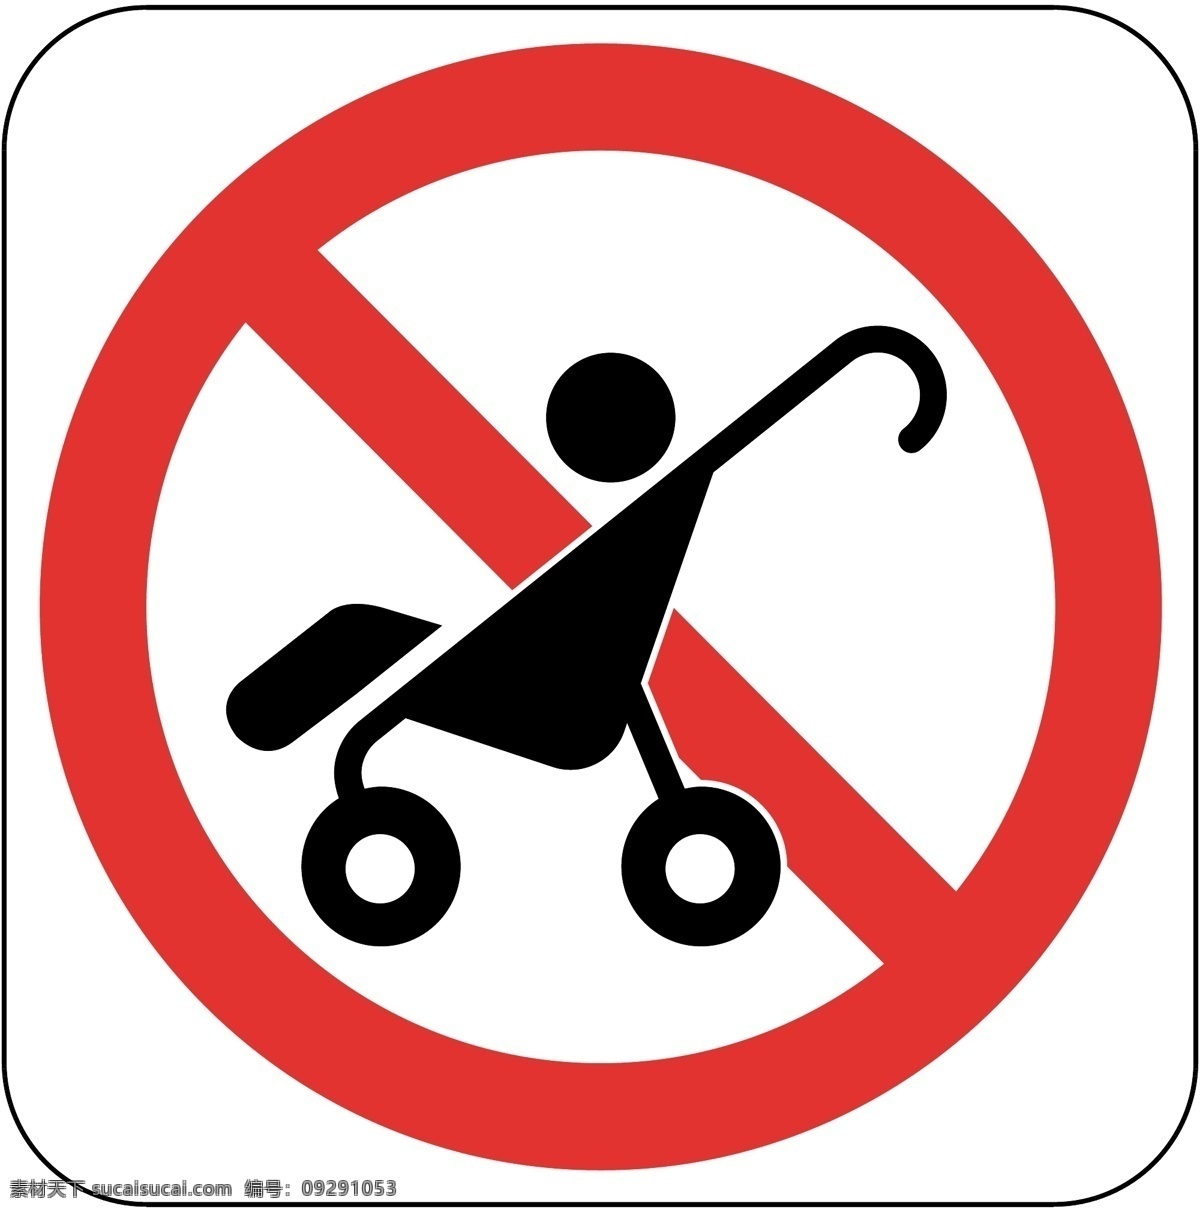 标识 标志 图标 标图 禁止 婴儿车 提示 电视台标志 小标志 企业 logo 标识标志图标 矢量